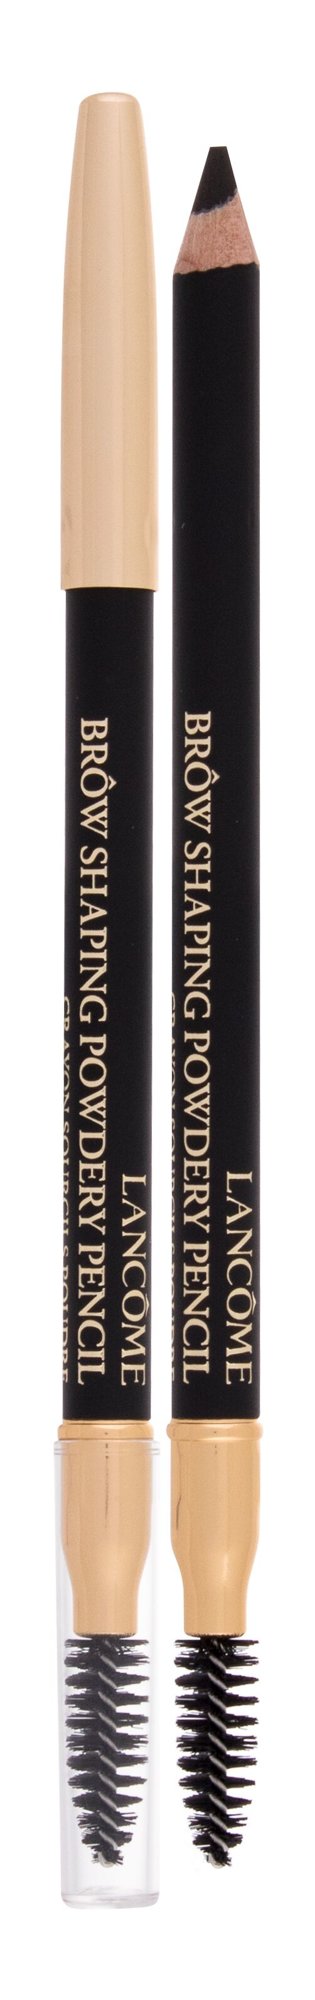 Lancome Brow Shaping Powdery Pencil 1,19g antakių pieštukas